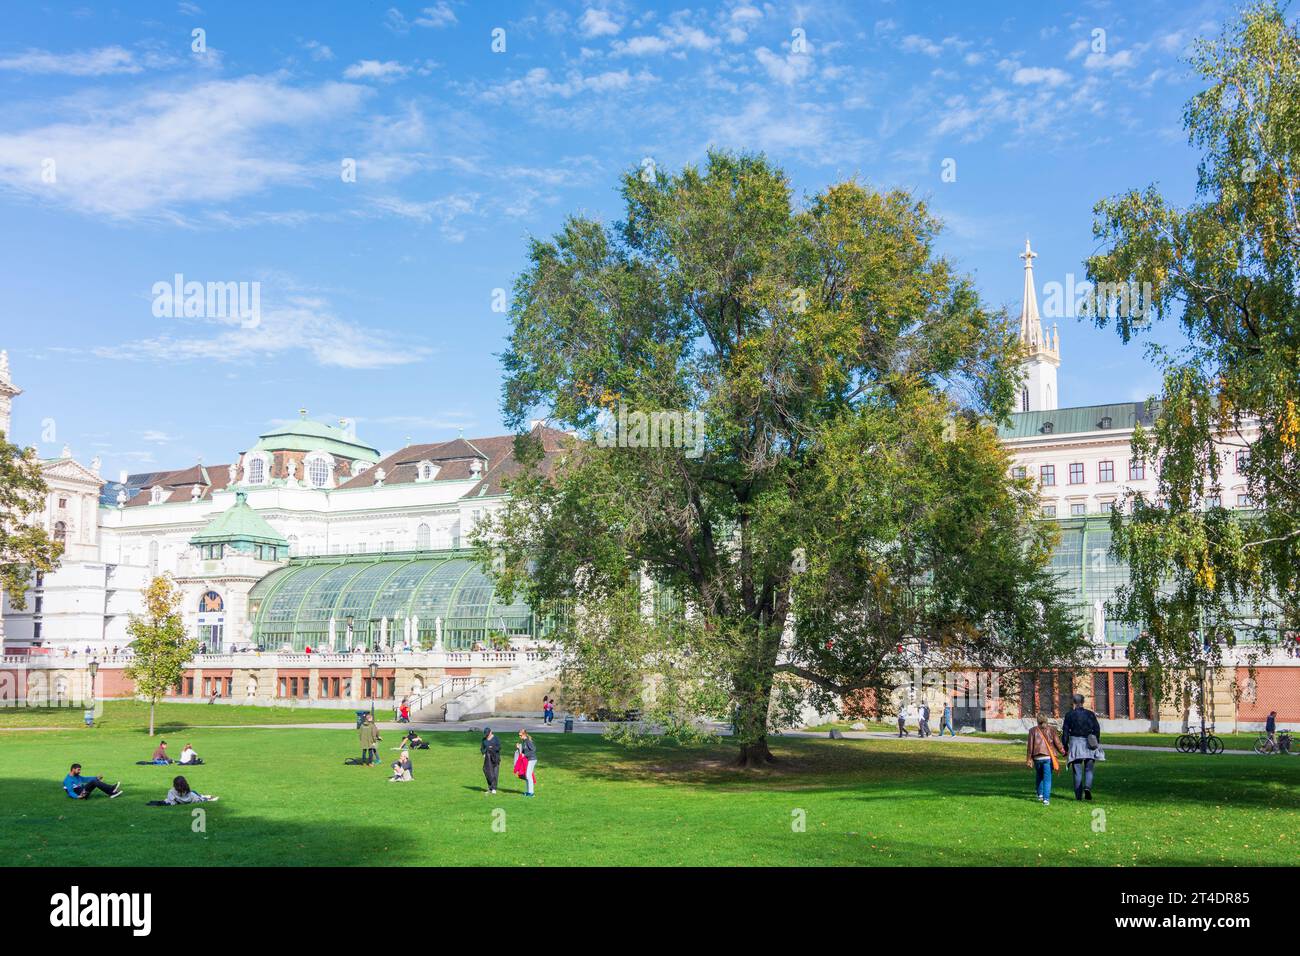 Vienna: park Burggarten, Palmenhaus (Palm House) in 01. Old Town, Wien, Austria Stock Photo